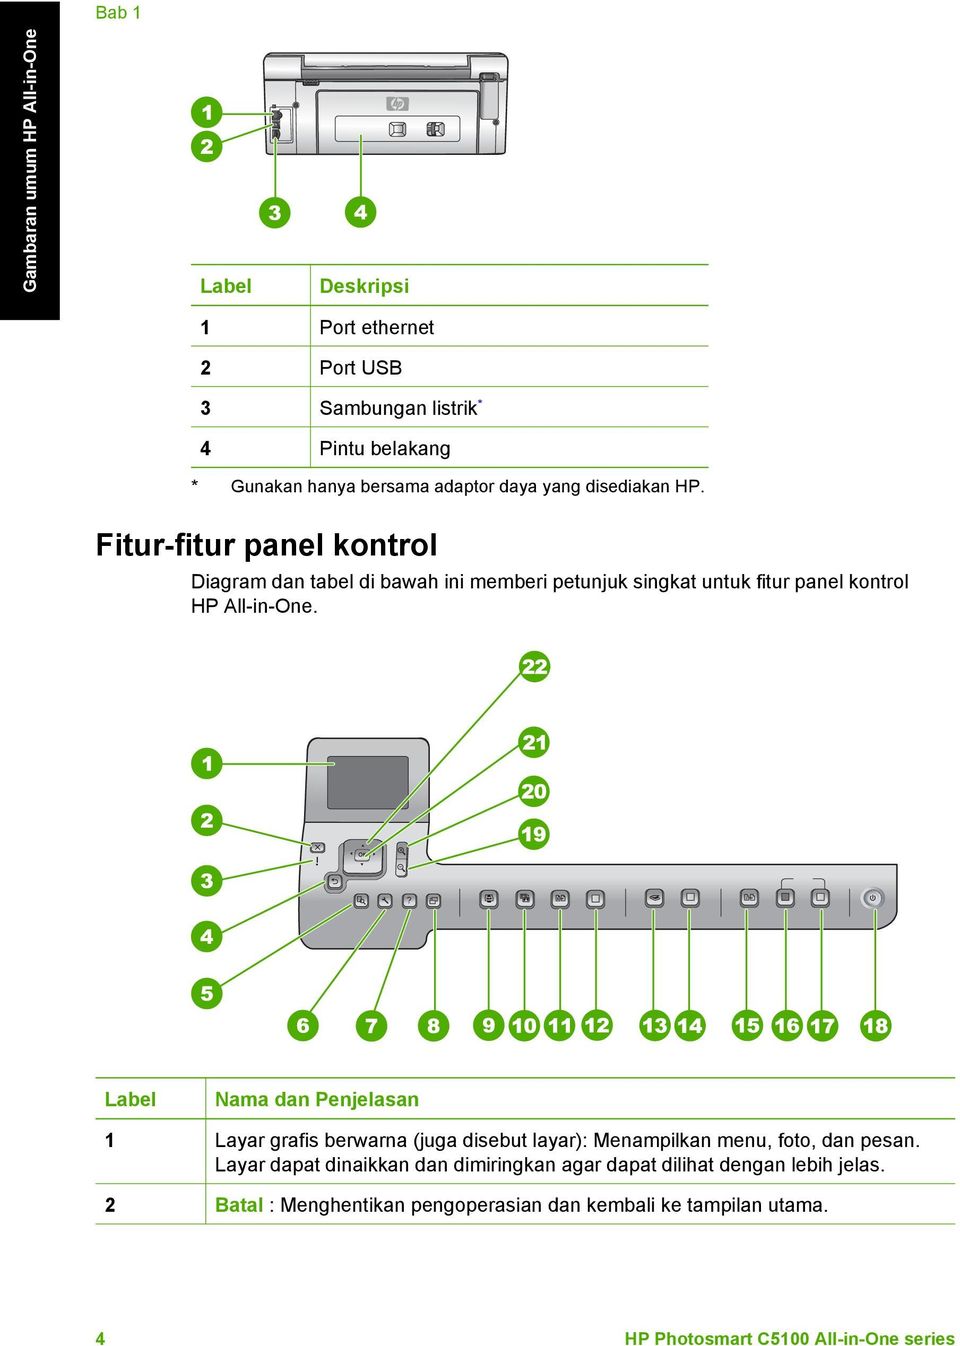 Fitur-fitur panel kontrol Diagram dan tabel di bawah ini memberi petunjuk singkat untuk fitur panel kontrol HP All-in-One.